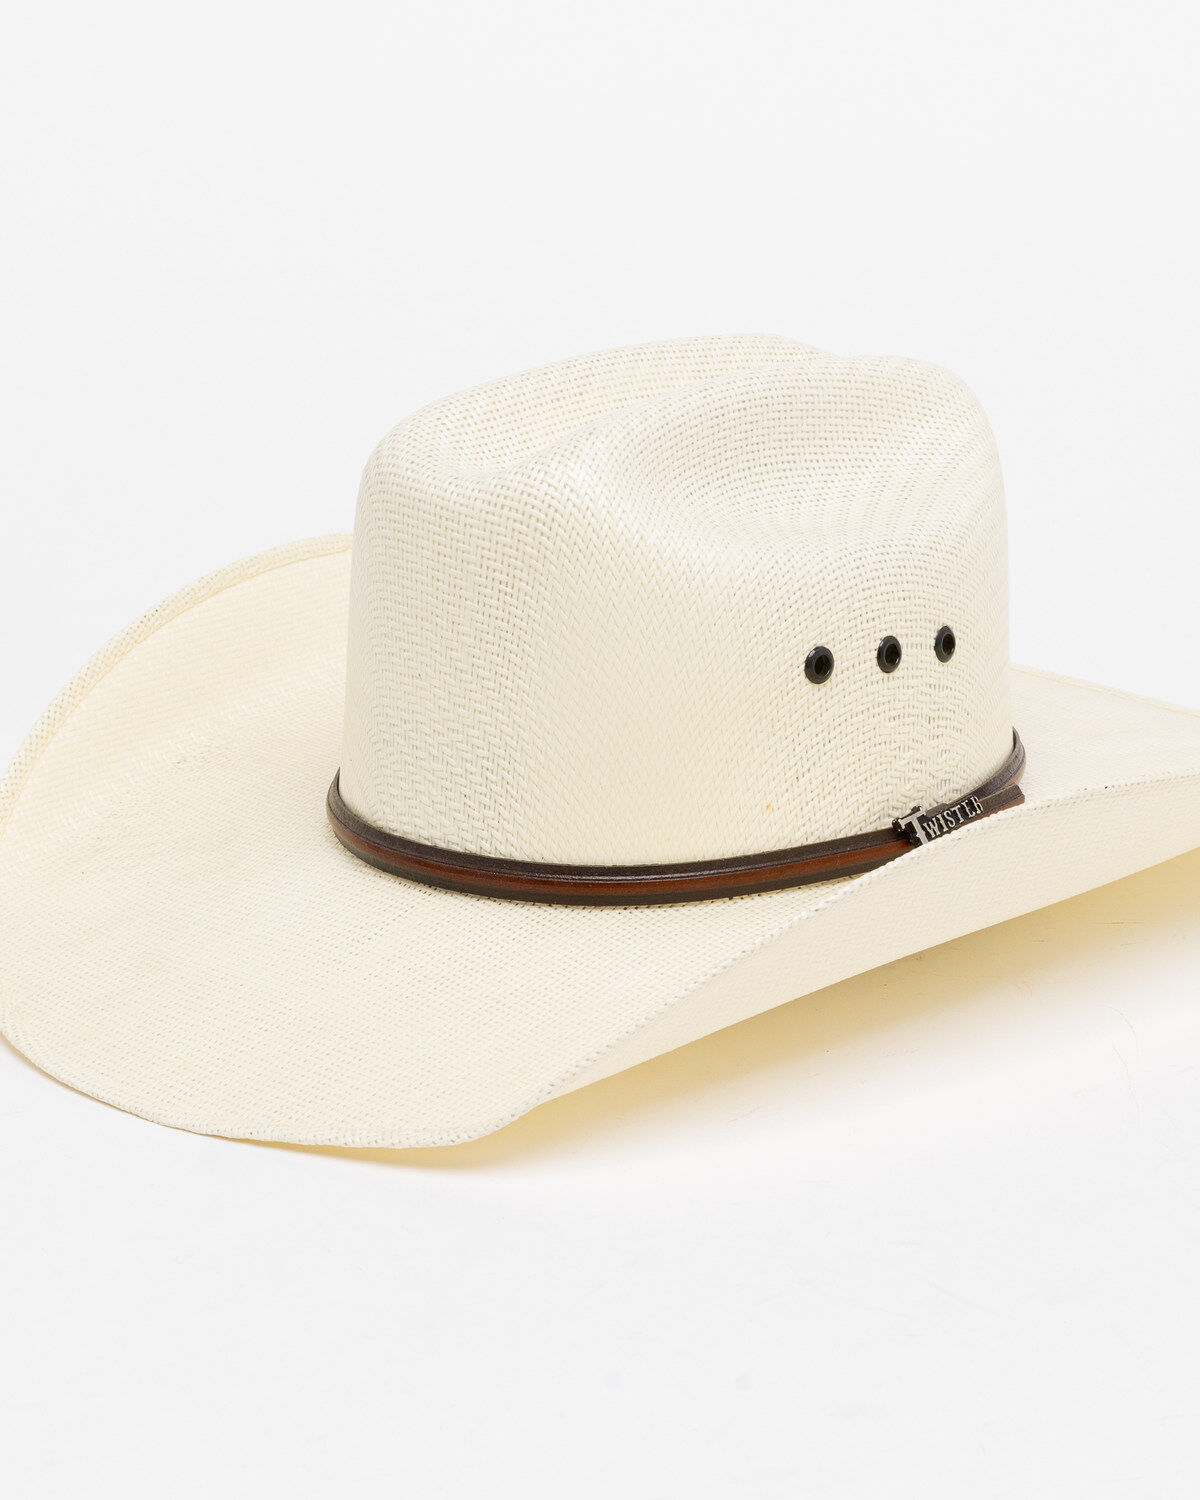 Men's Western Hats on Sale